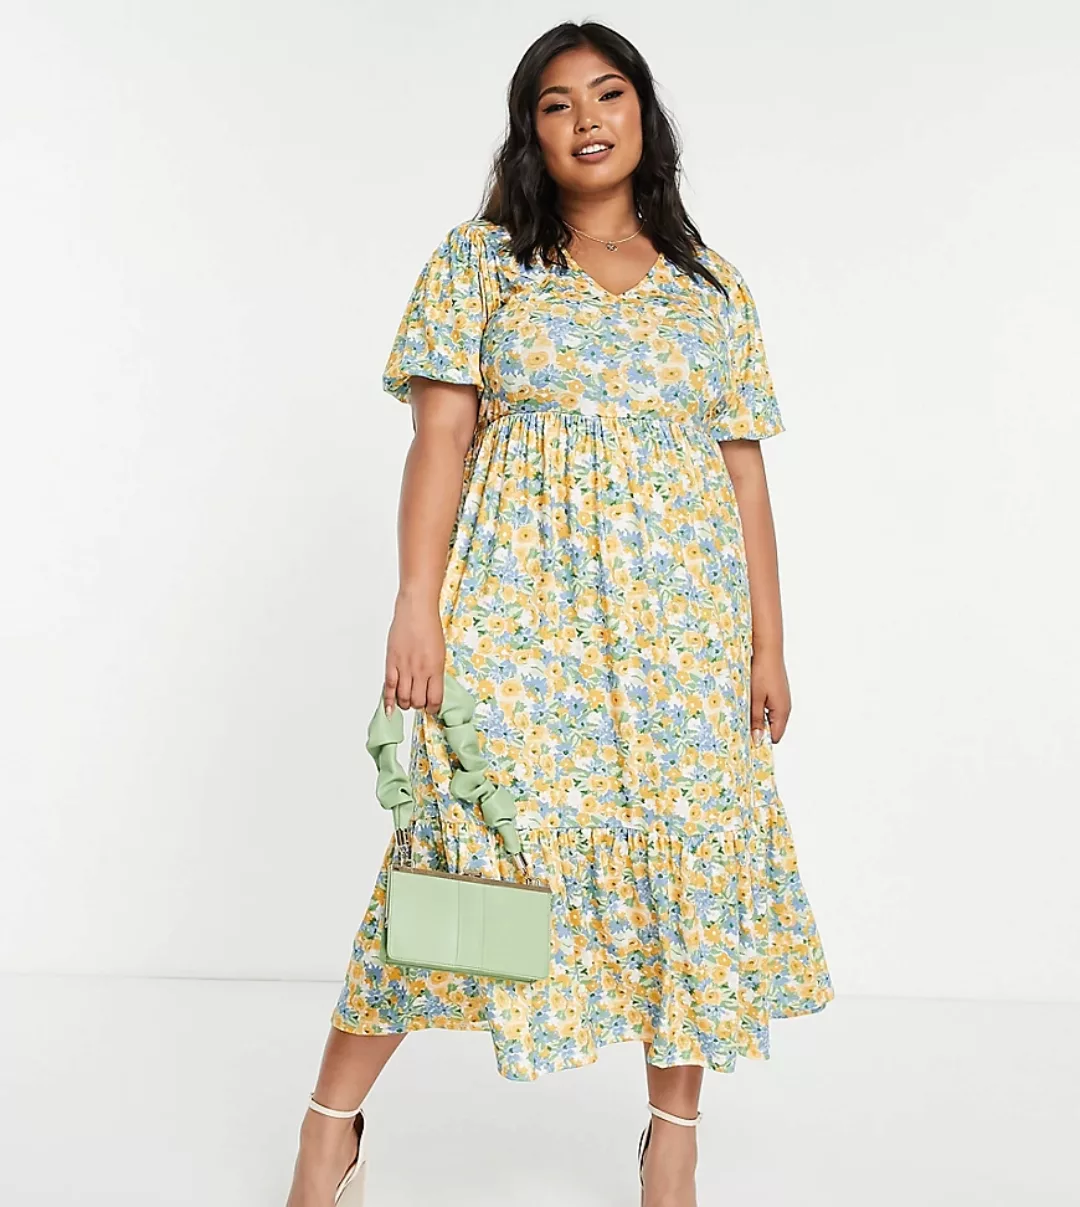 In The Style Plus x Stacey Solomon – Gestuftes Midi-Hängerkleid in Gelb geb günstig online kaufen